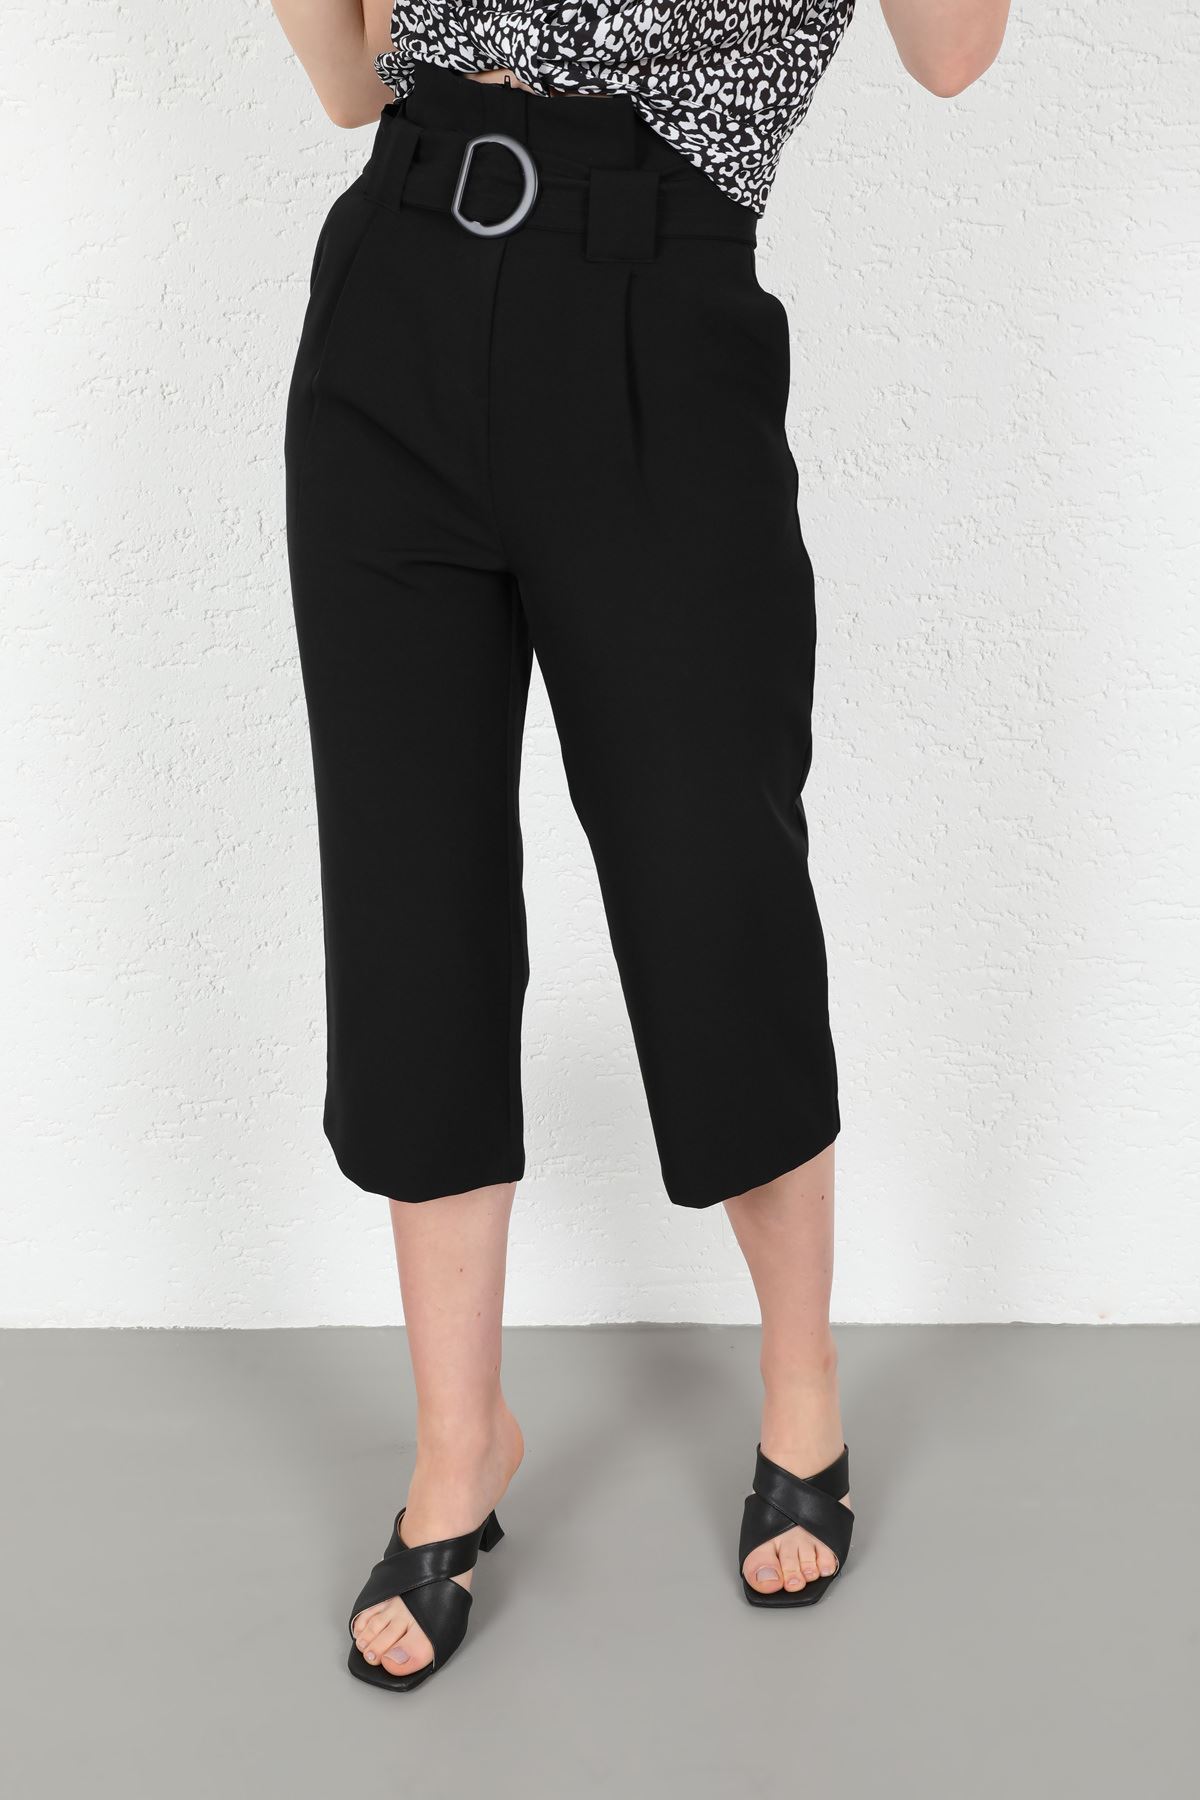 Atlas Fabric 3/4 Short Wide Wide Leg Women'S Trouser - Black